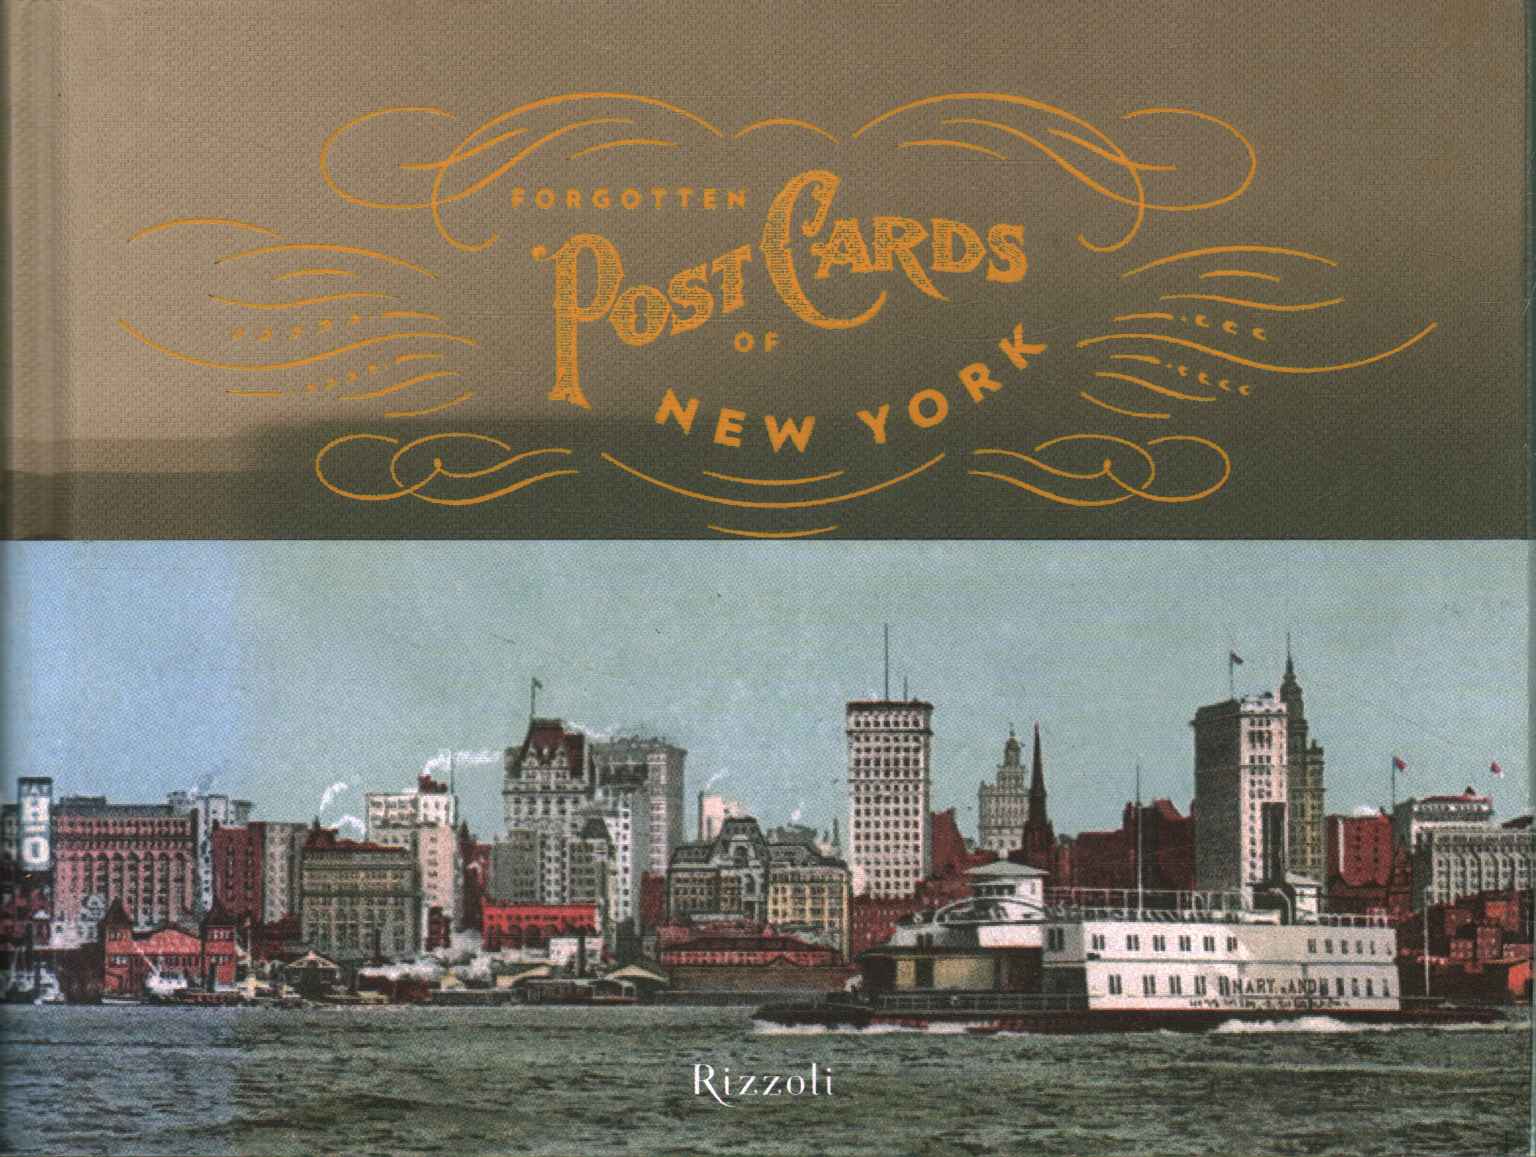 Cartes postales oubliées de New York